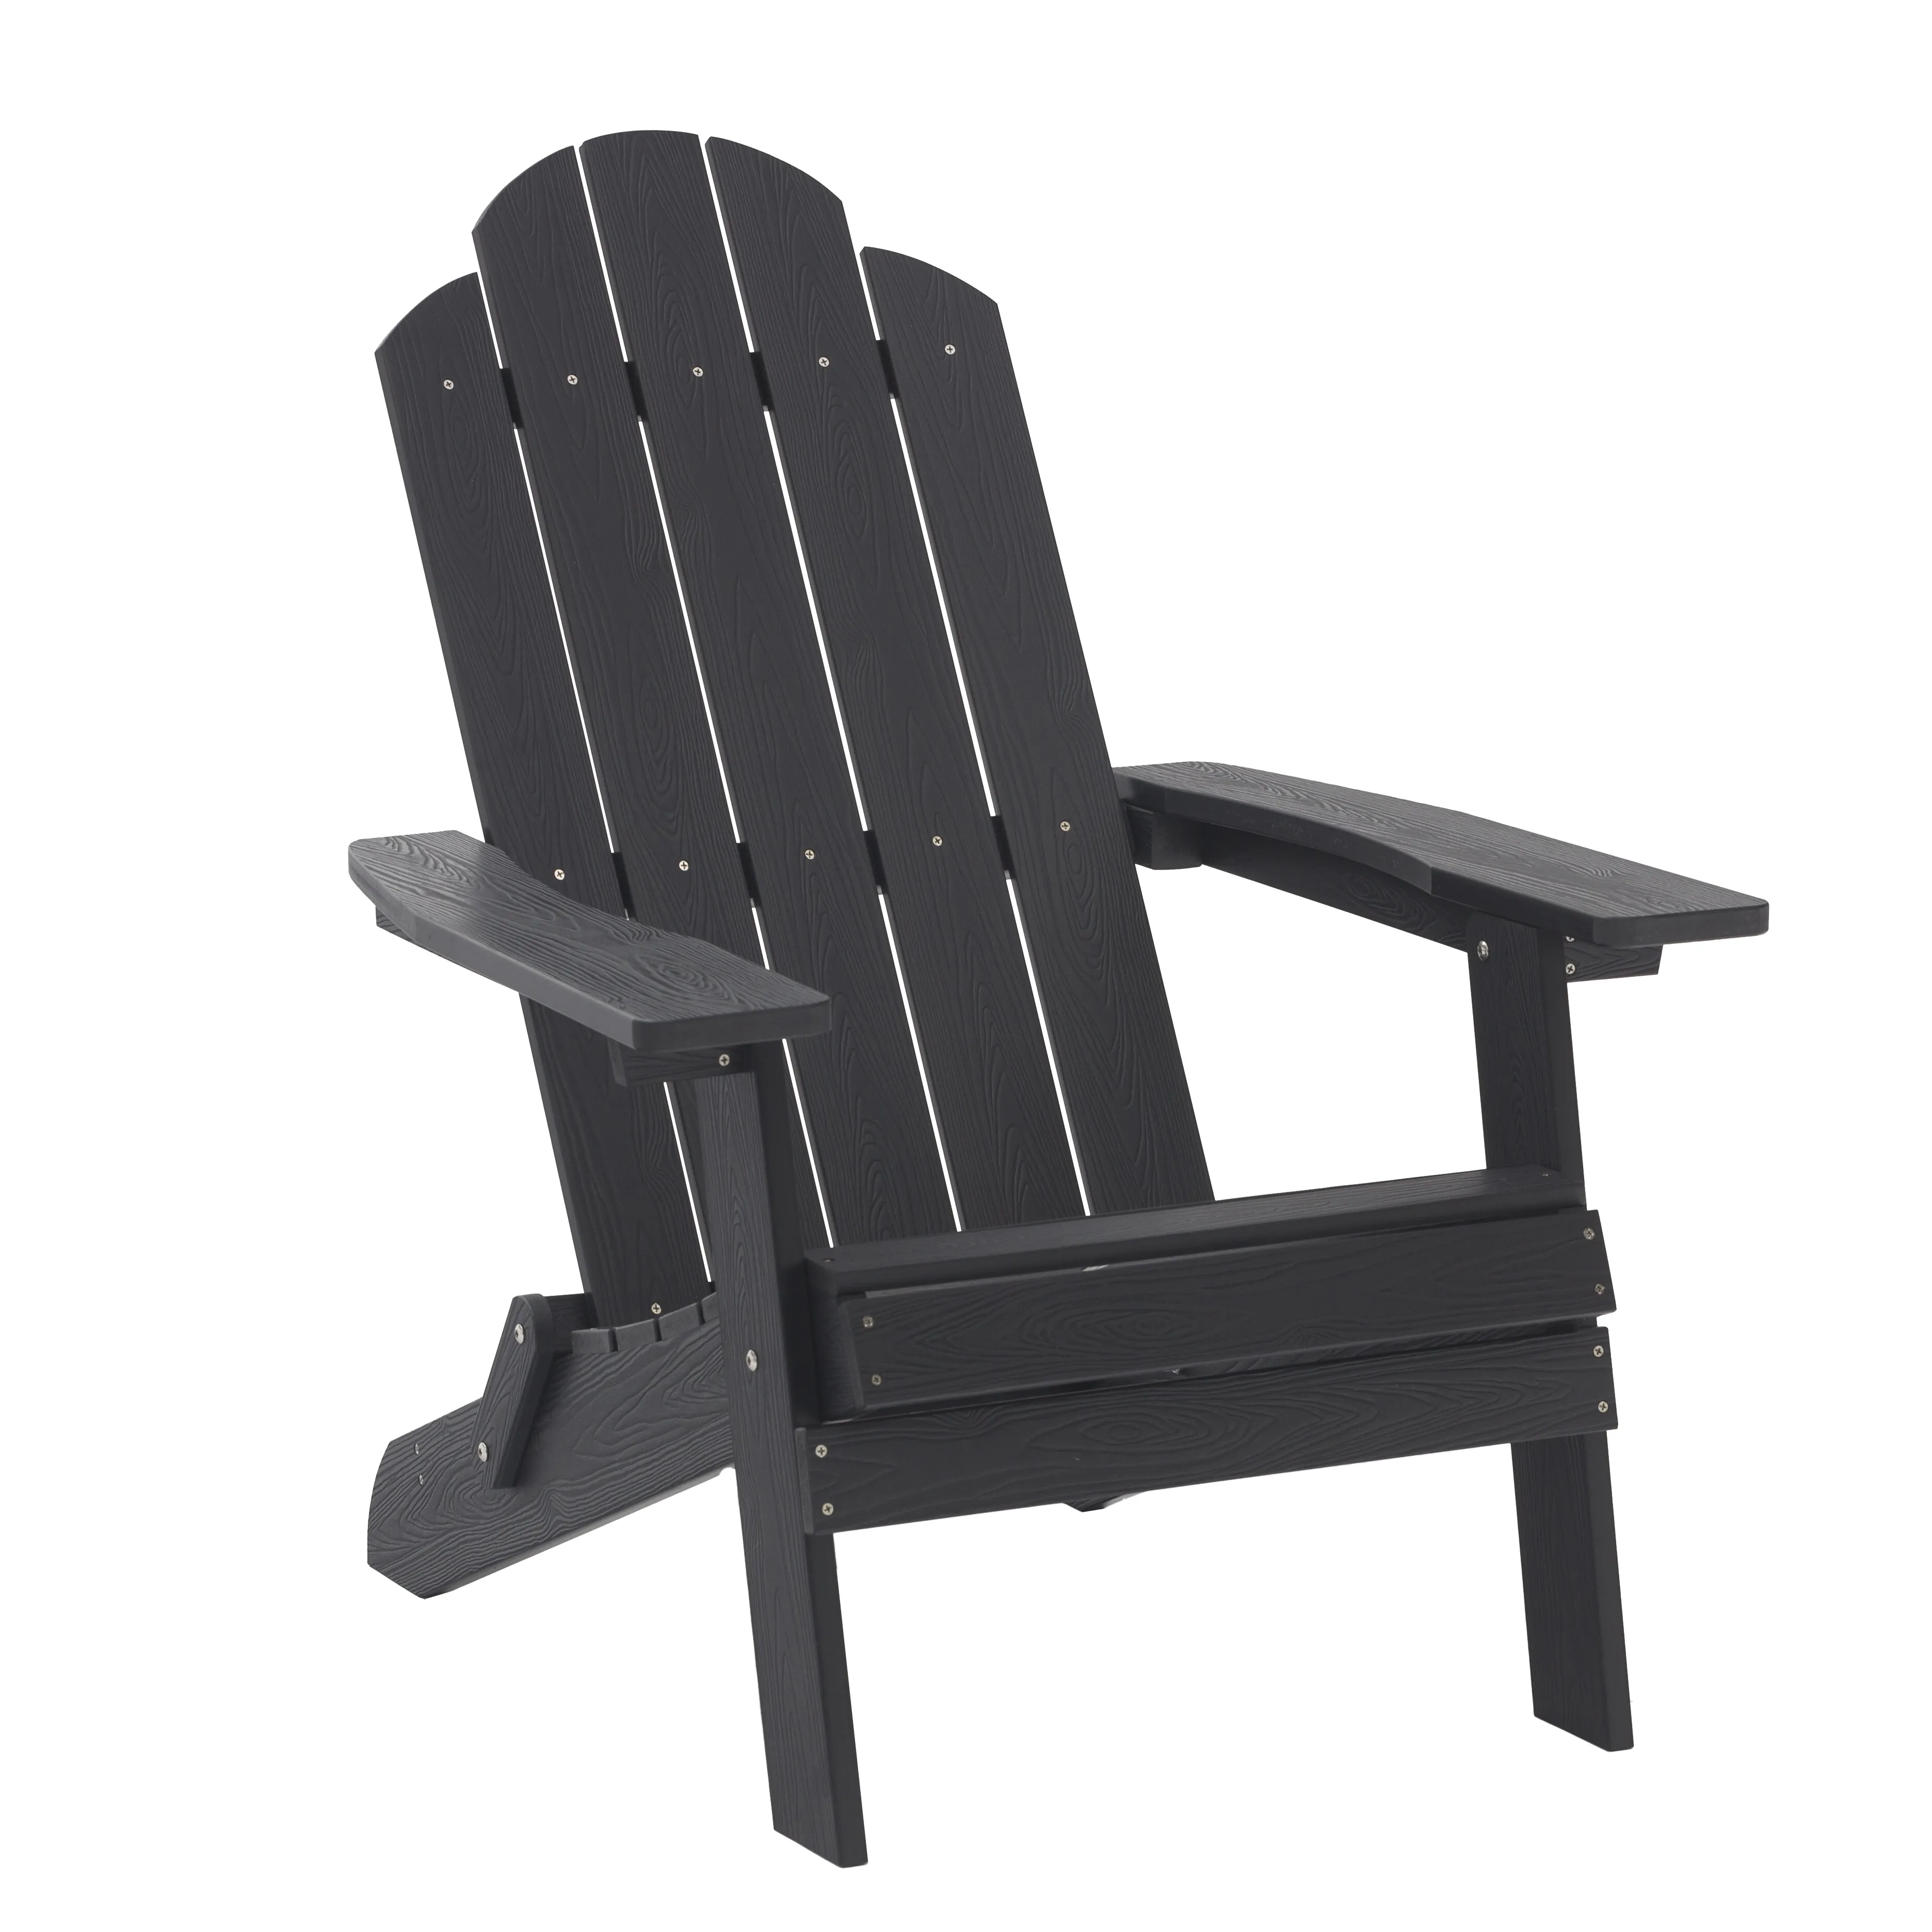 HIPS Plastic Wood cadeira adirondack dobrável Outdoor Garden Usando material impermeável cadeiras Preto